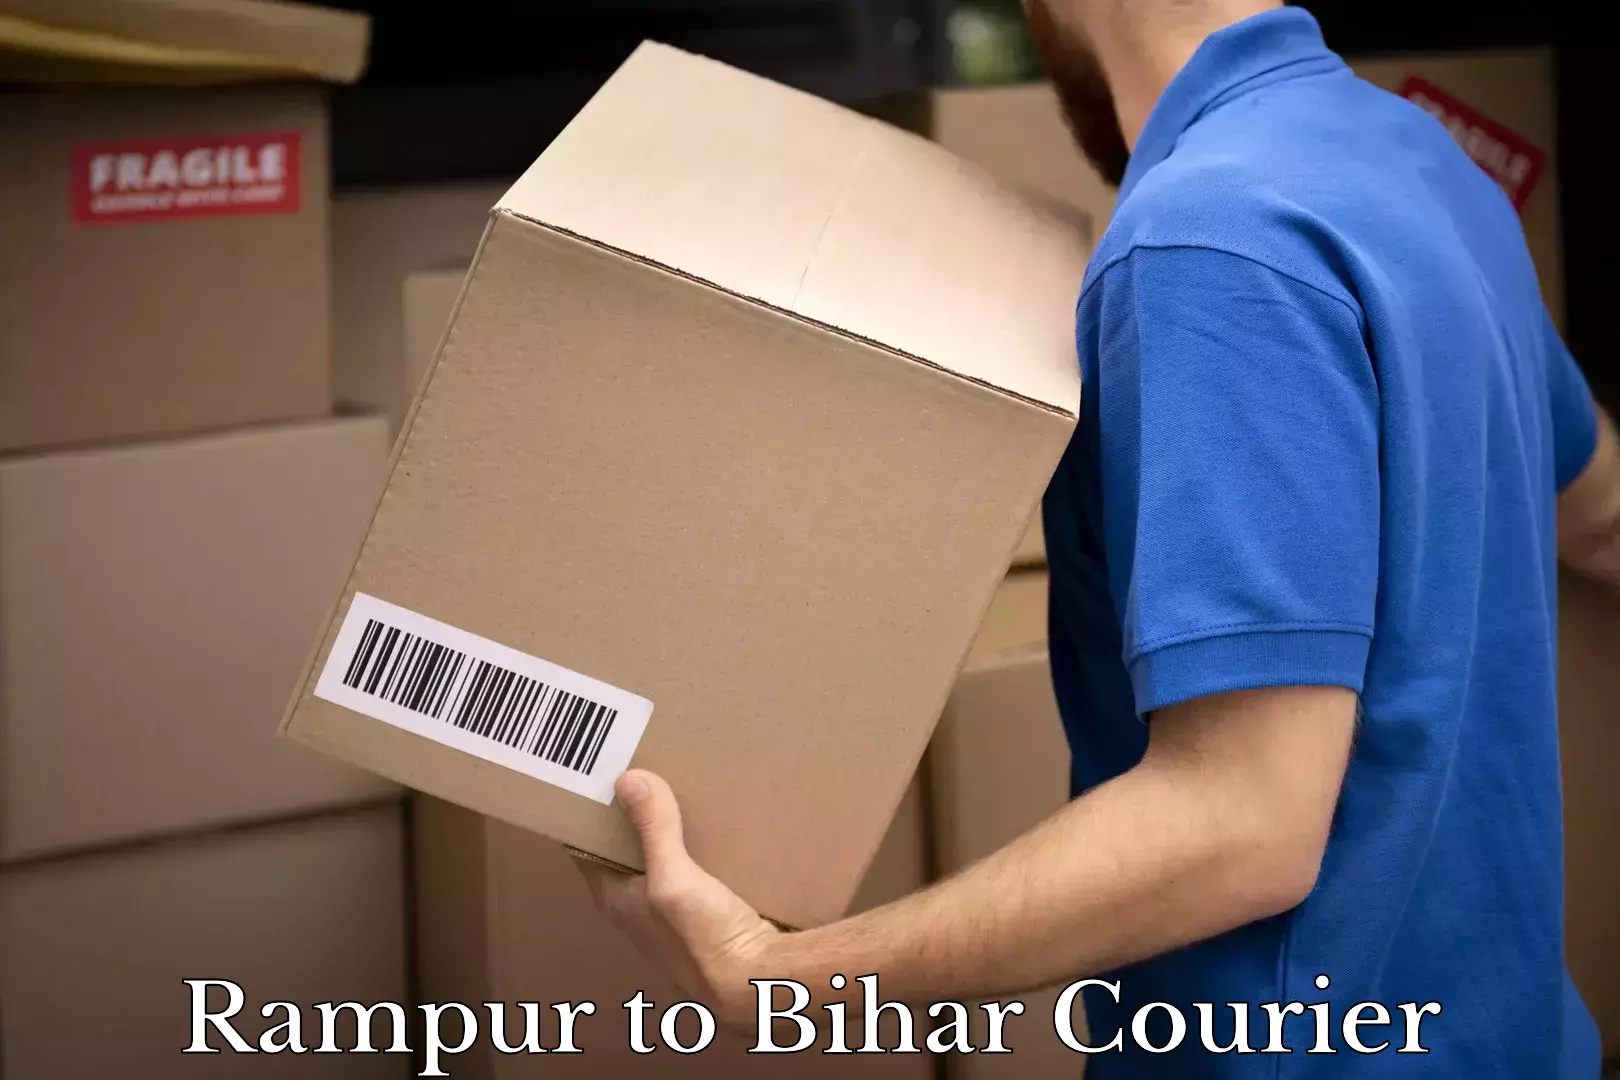 Modern courier technology Rampur to Bihar